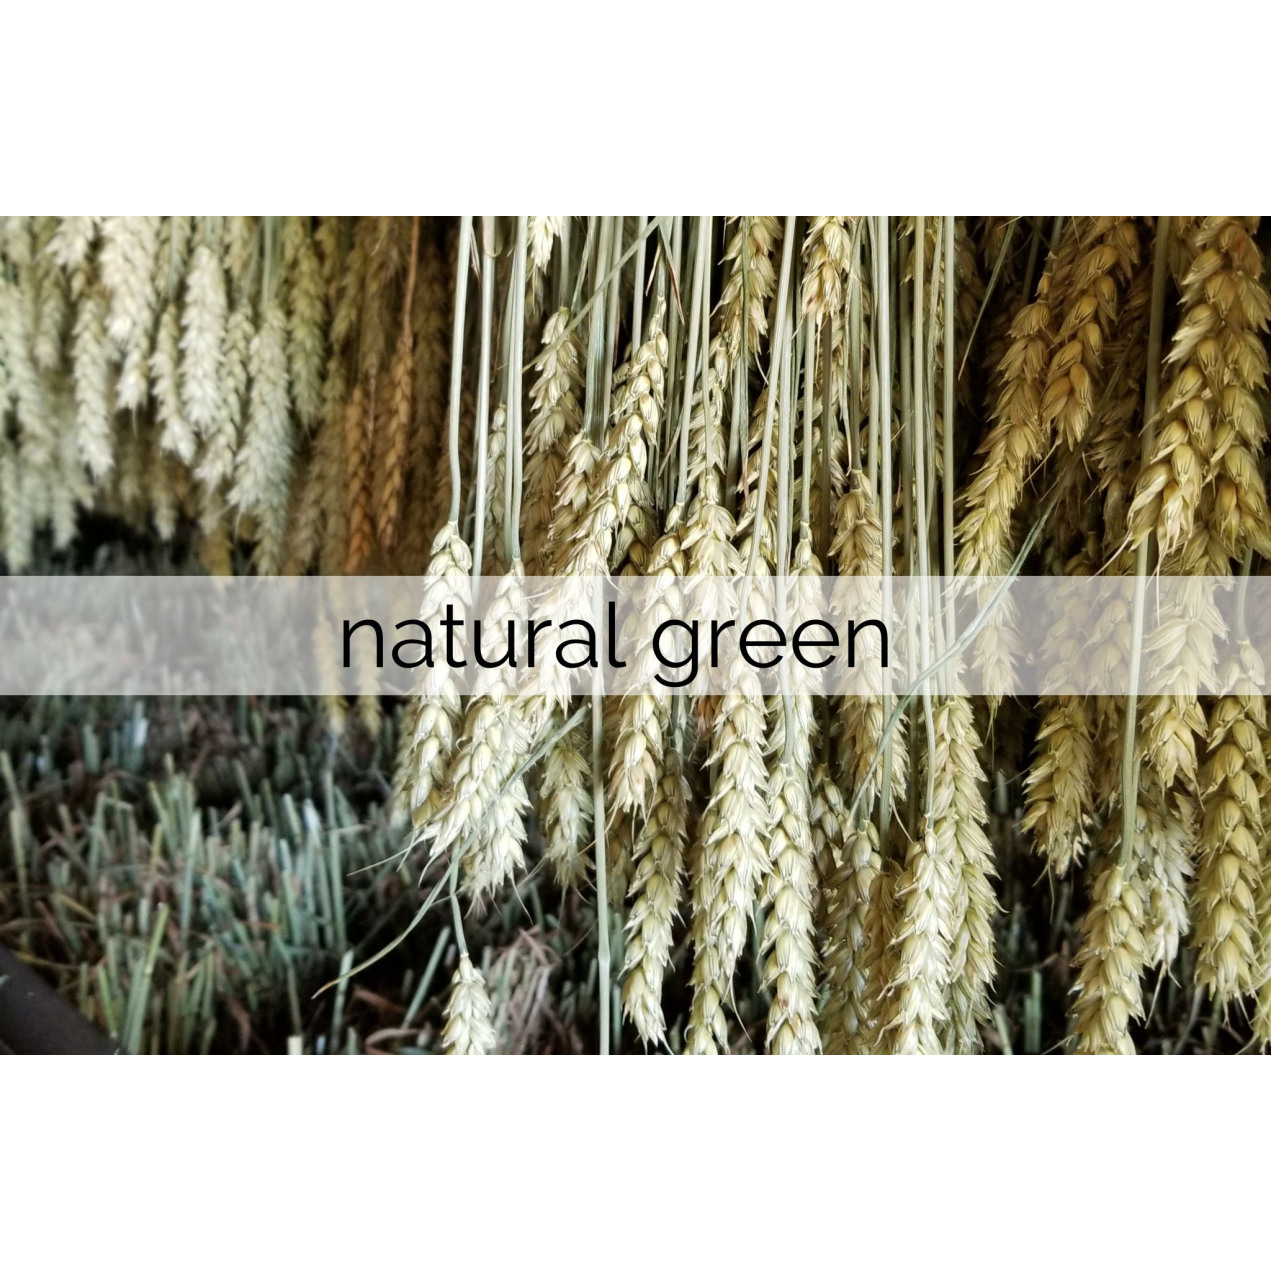 natural green